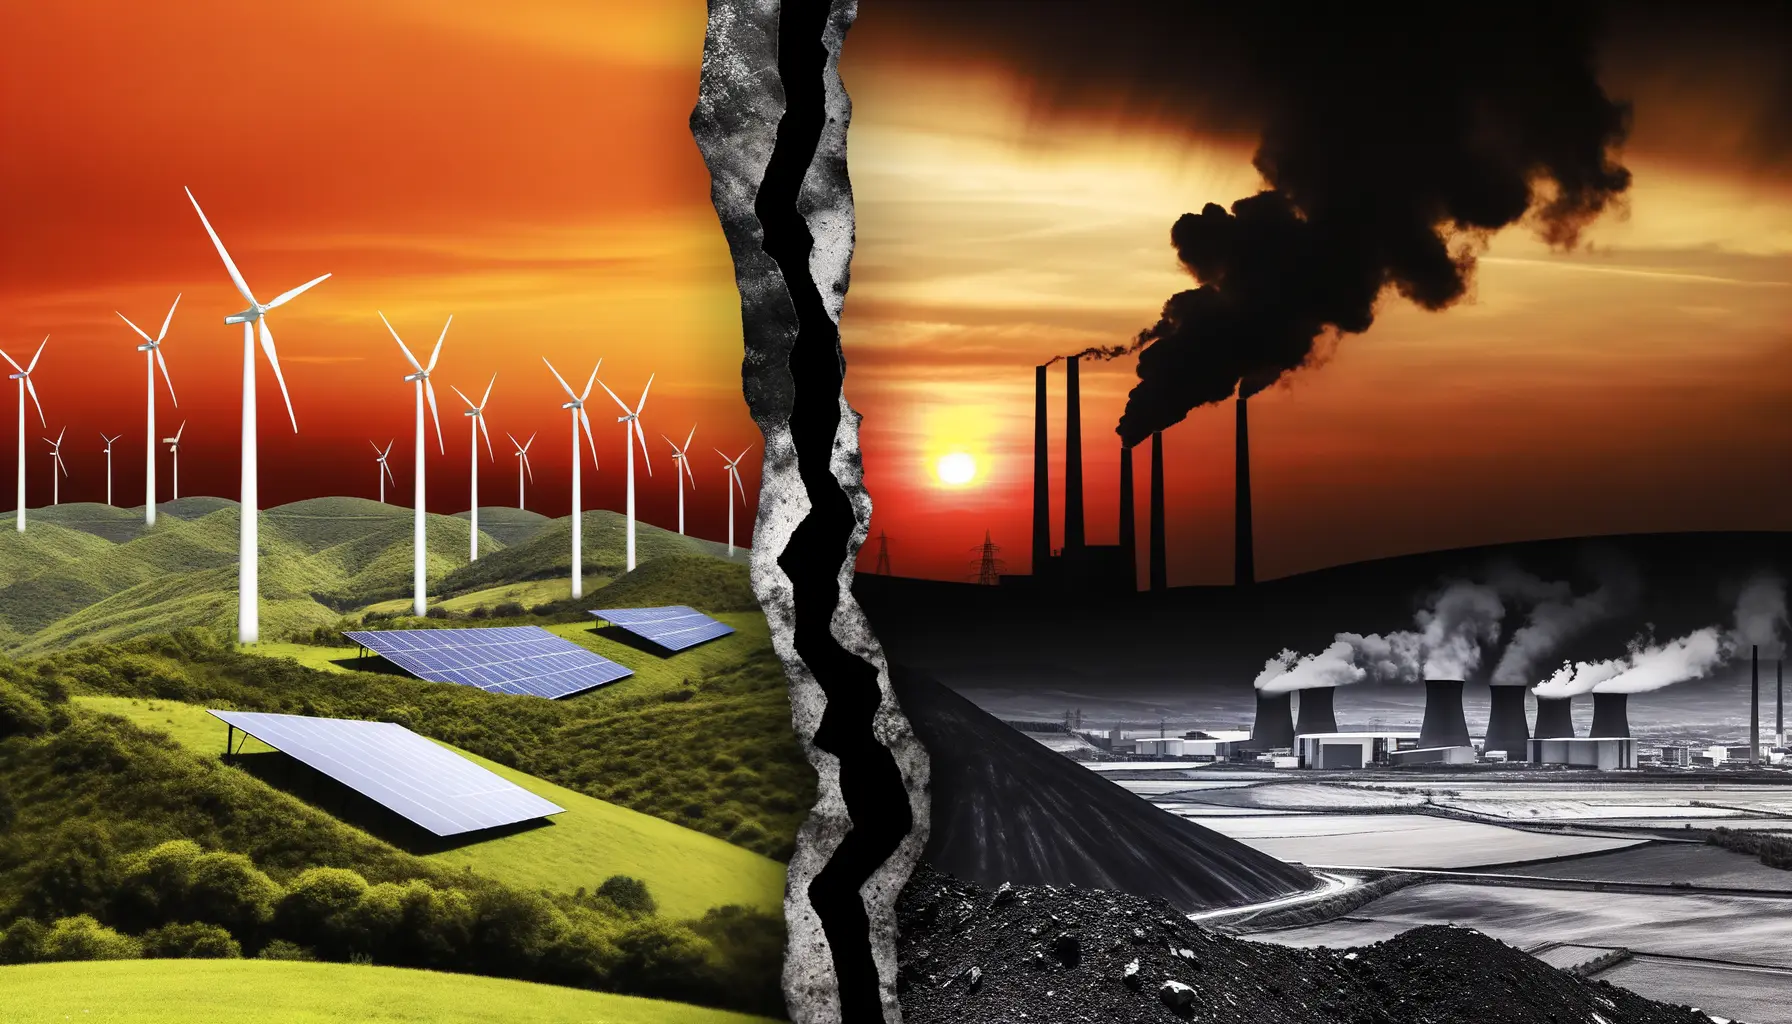 Kontrast zwischen erneuerbarer Energie und fossilen Brennstoffen